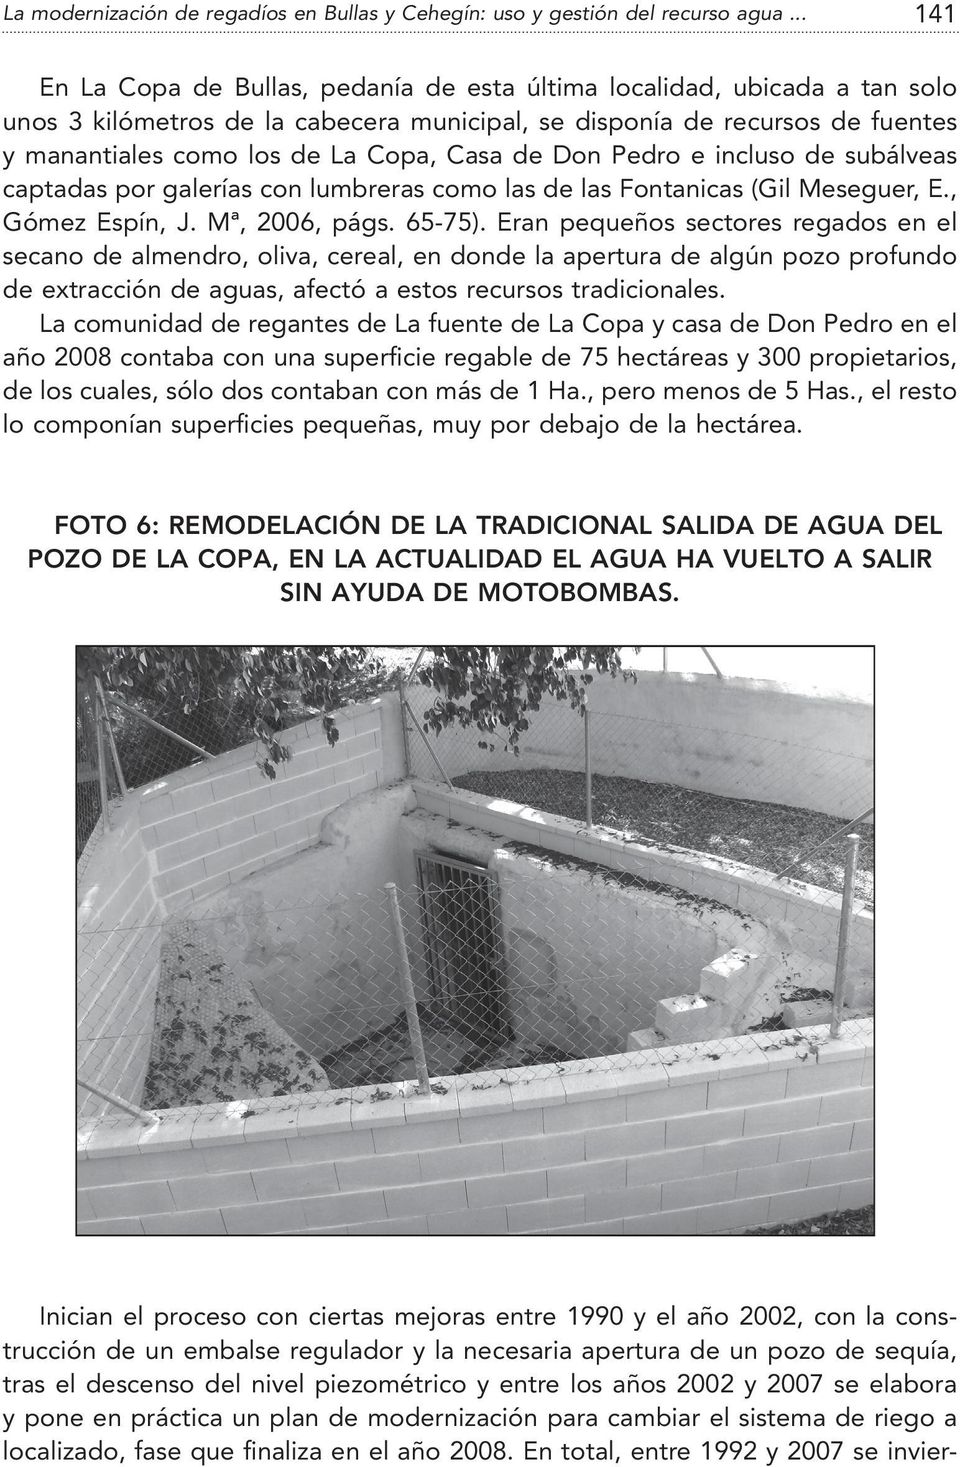 Casa de Don Pedro e incluso de subálveas captadas por galerías con lumbreras como las de las Fontanicas (Gil Meseguer, E., Gómez Espín, J. Mª, 2006, págs. 65-75).